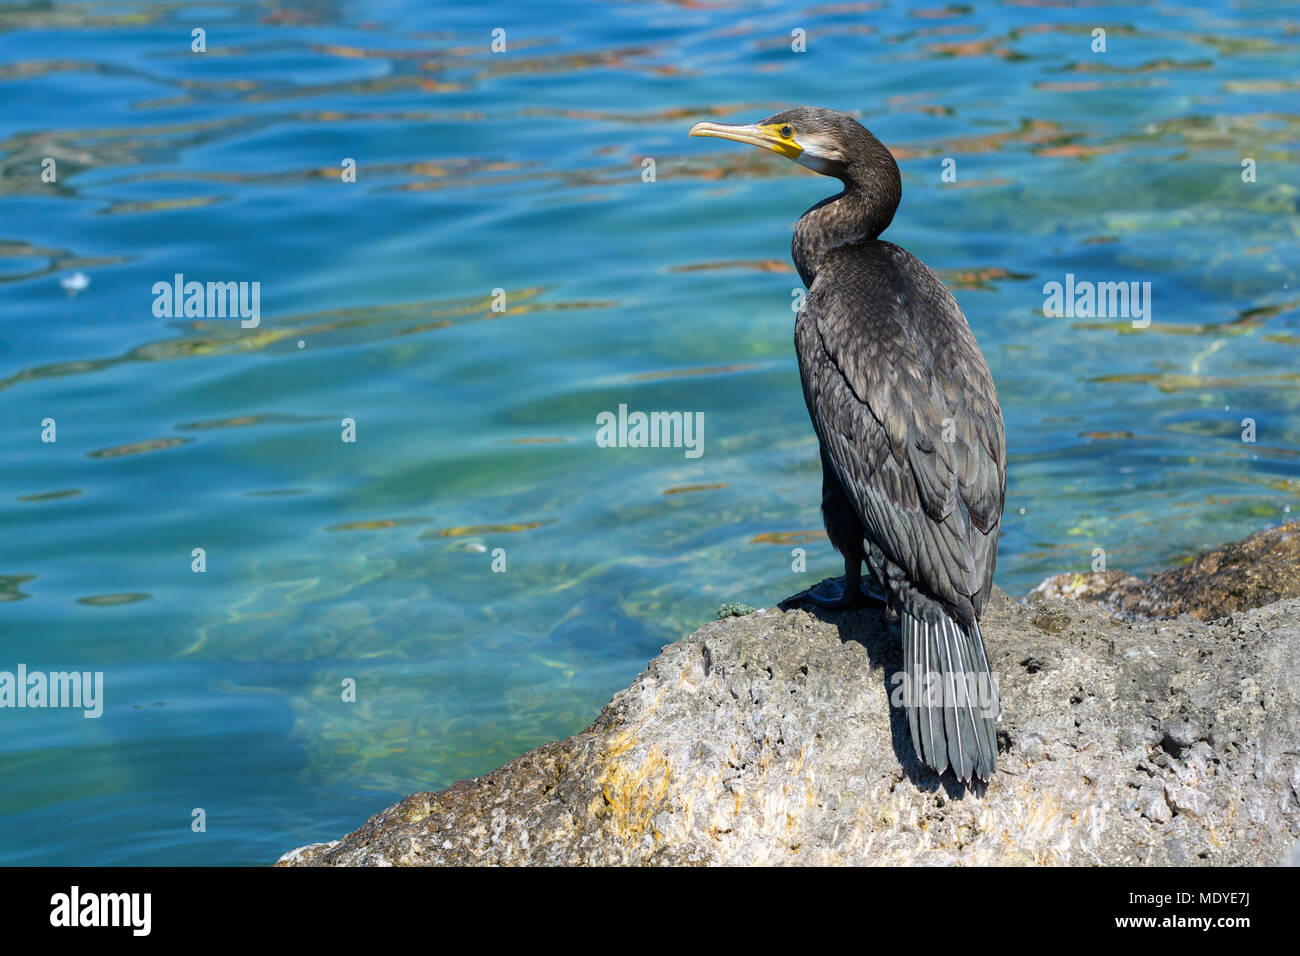 Back view of a Great Black Cormorant (Phalacrocorax carbo) standing on rocks at Lake Garda (Lago di Garda) in Veneto, Italy Stock Photo